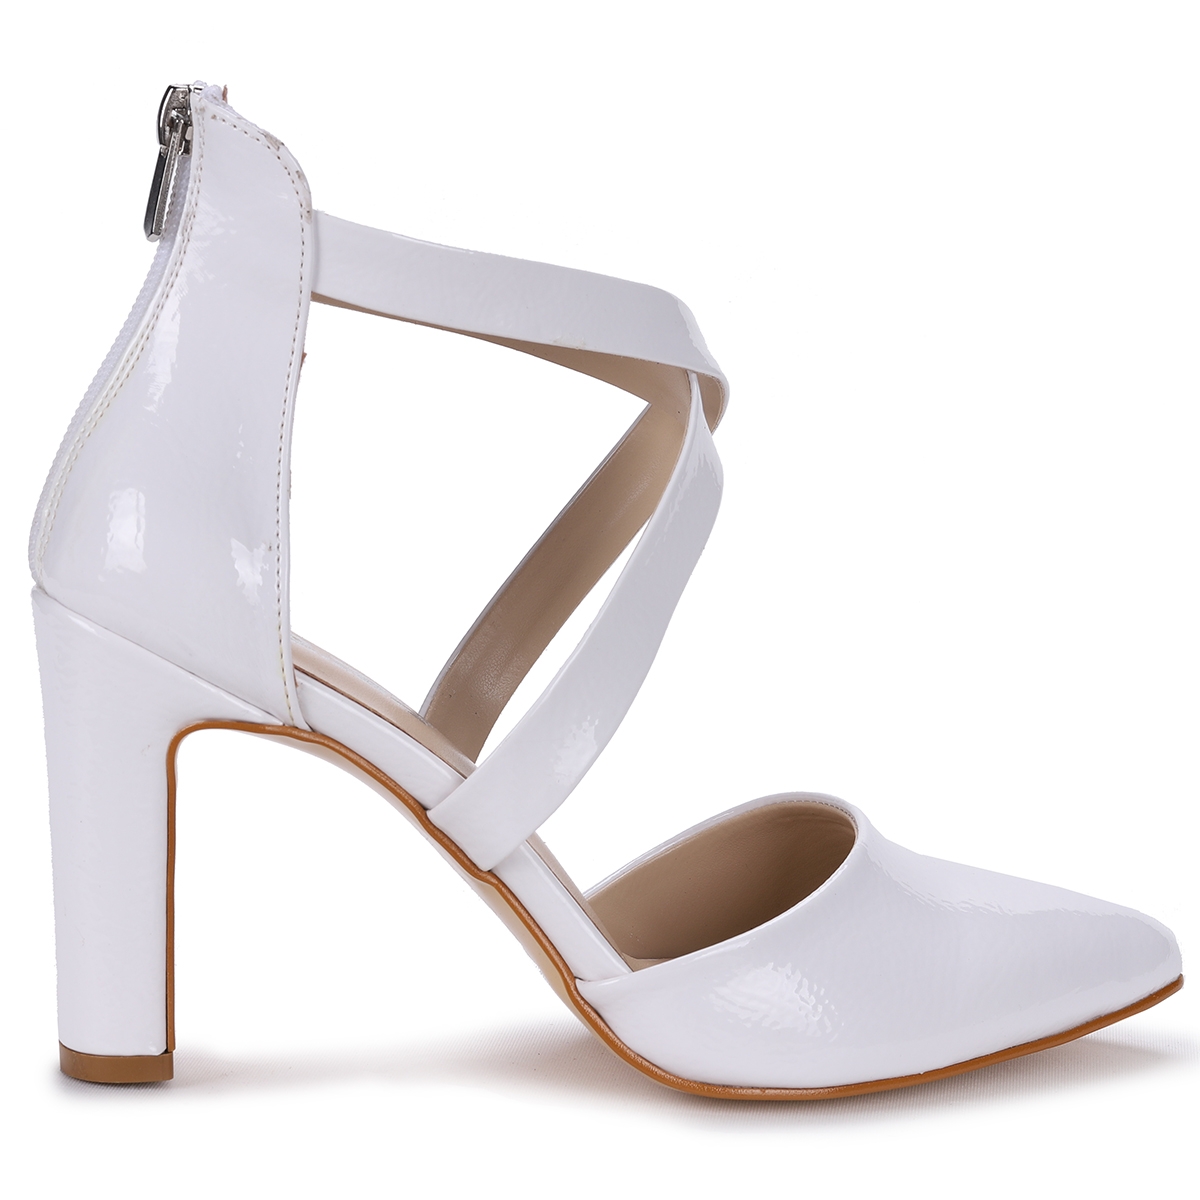 Flo Pnt 451027 Kırışık Rugan 9 Cm Topuk Kadın Sandalet Ayakkabı Beyaz. 6